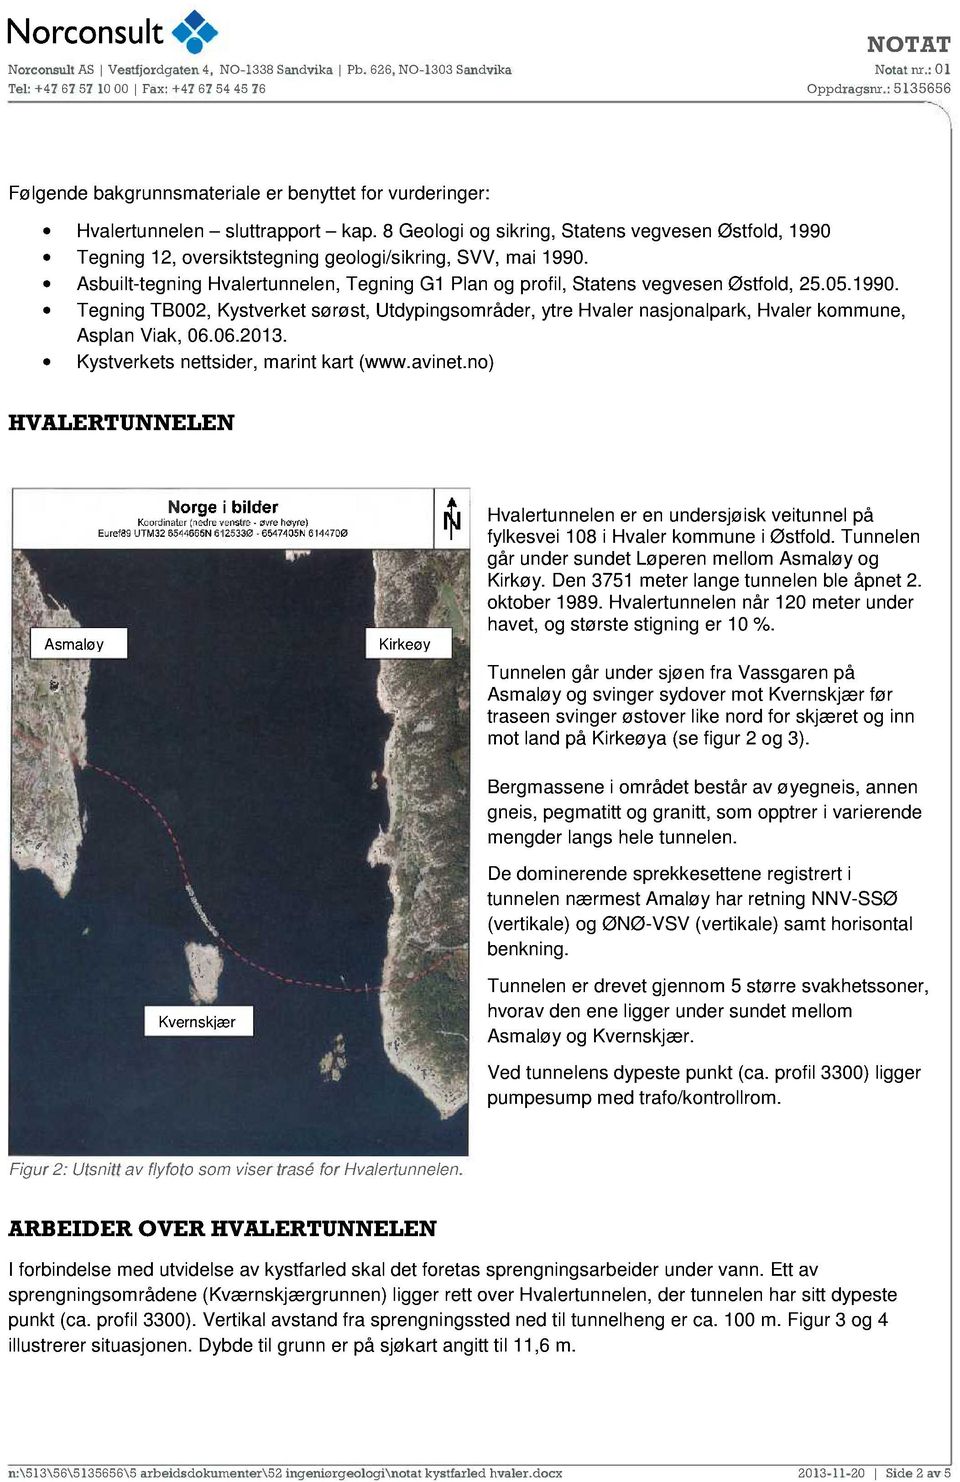 Asbuilt-tegning Hvalertunnelen, Tegning G1 Plan og profil, Statens vegvesen Østfold, 25.05.1990.